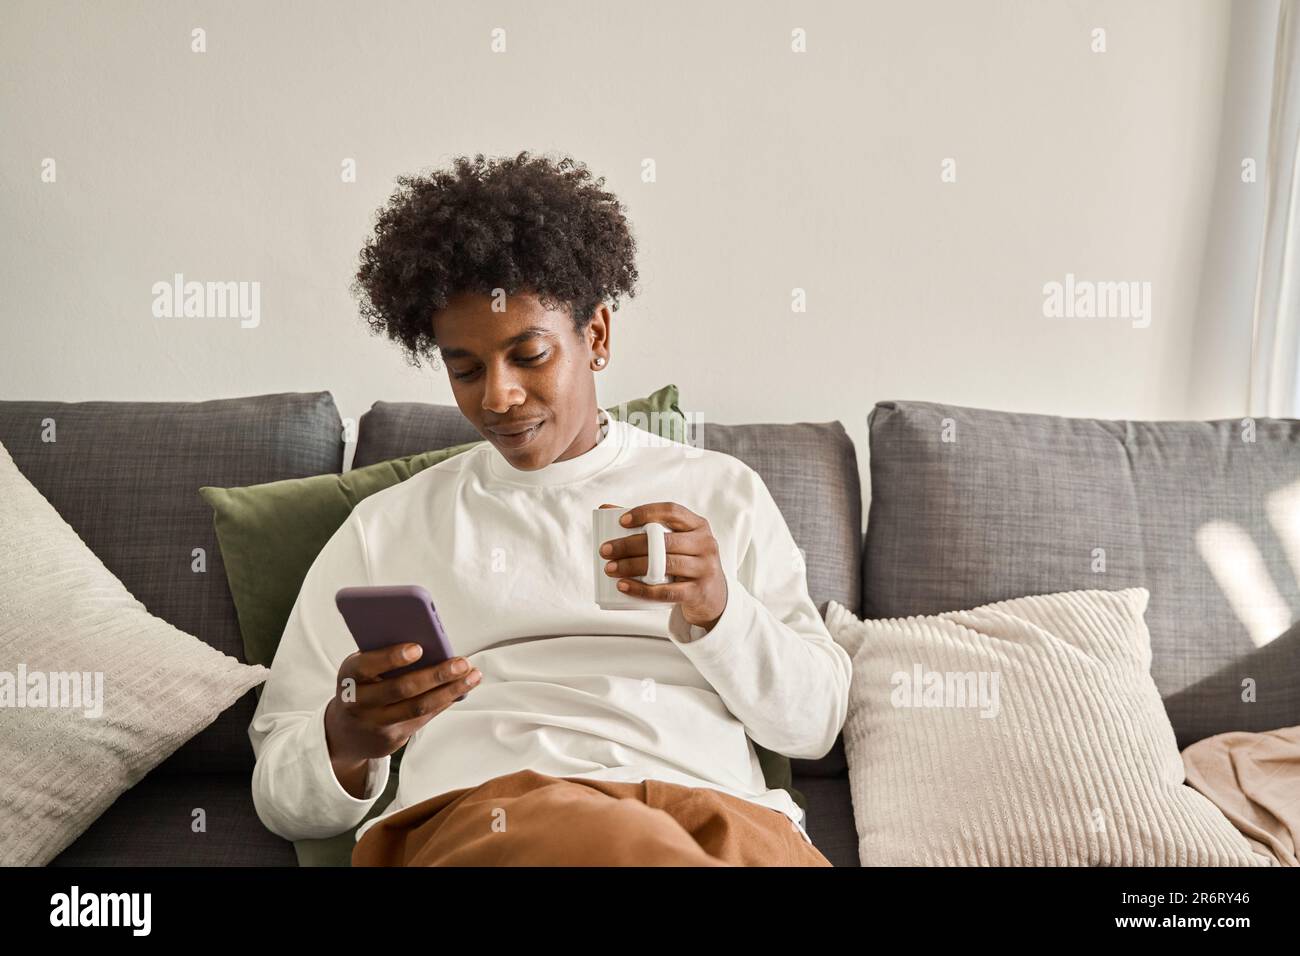 Relajado gen z adolescente afroamericano sentado en el sofá usando el teléfono. Foto de stock